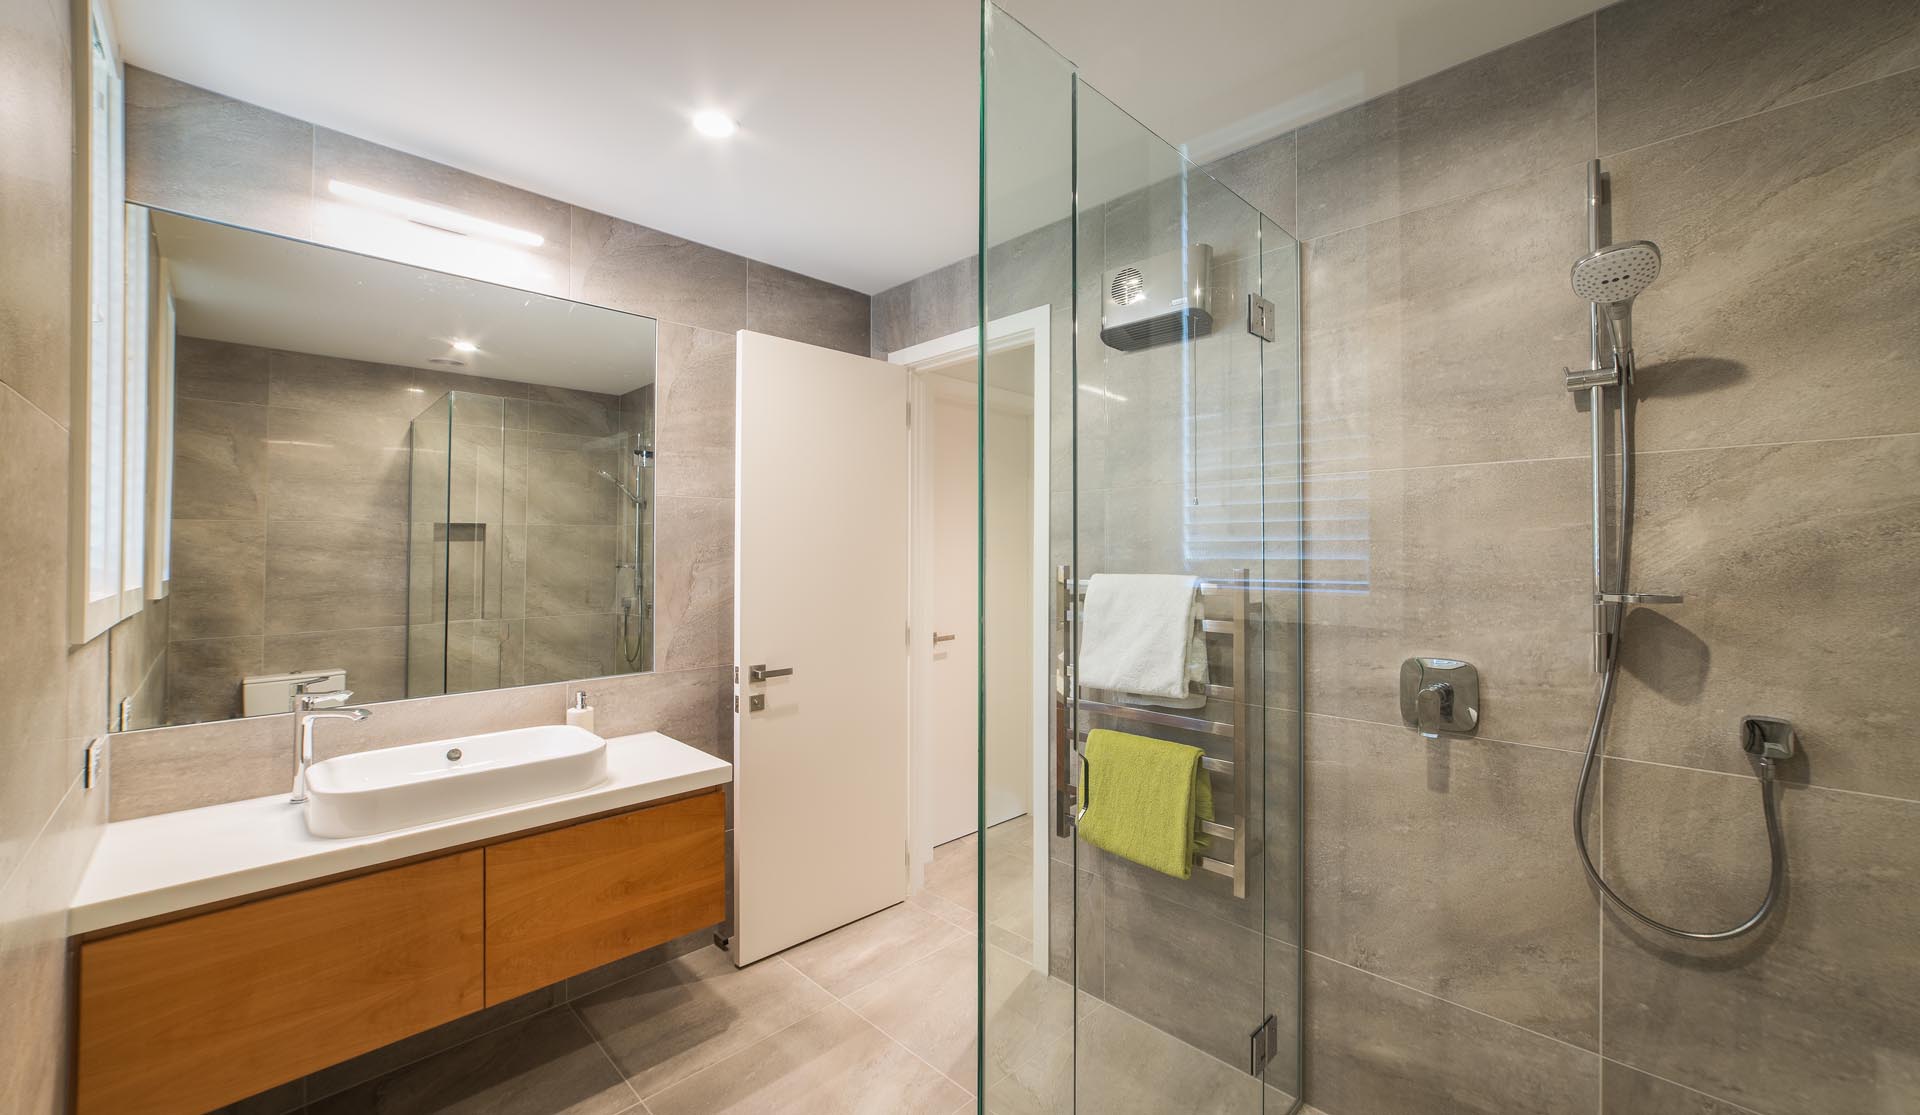 Современная ванная комната с плиткой большого формата, деревянной раковиной и белой столешницей с подходящей раковиной.